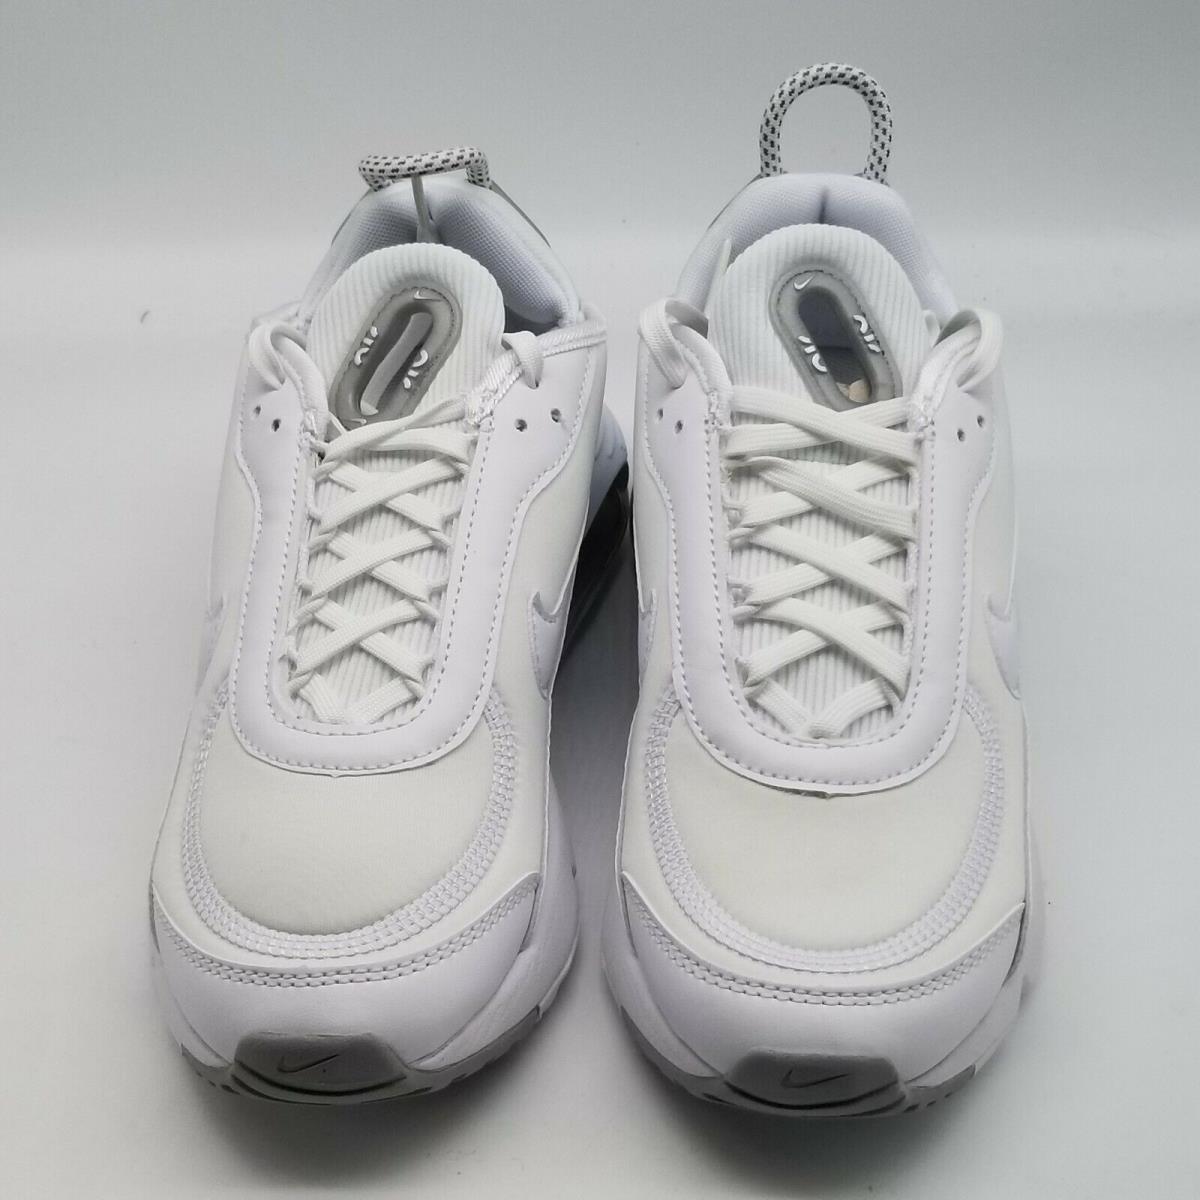 Nike shoes Air Max - White 0